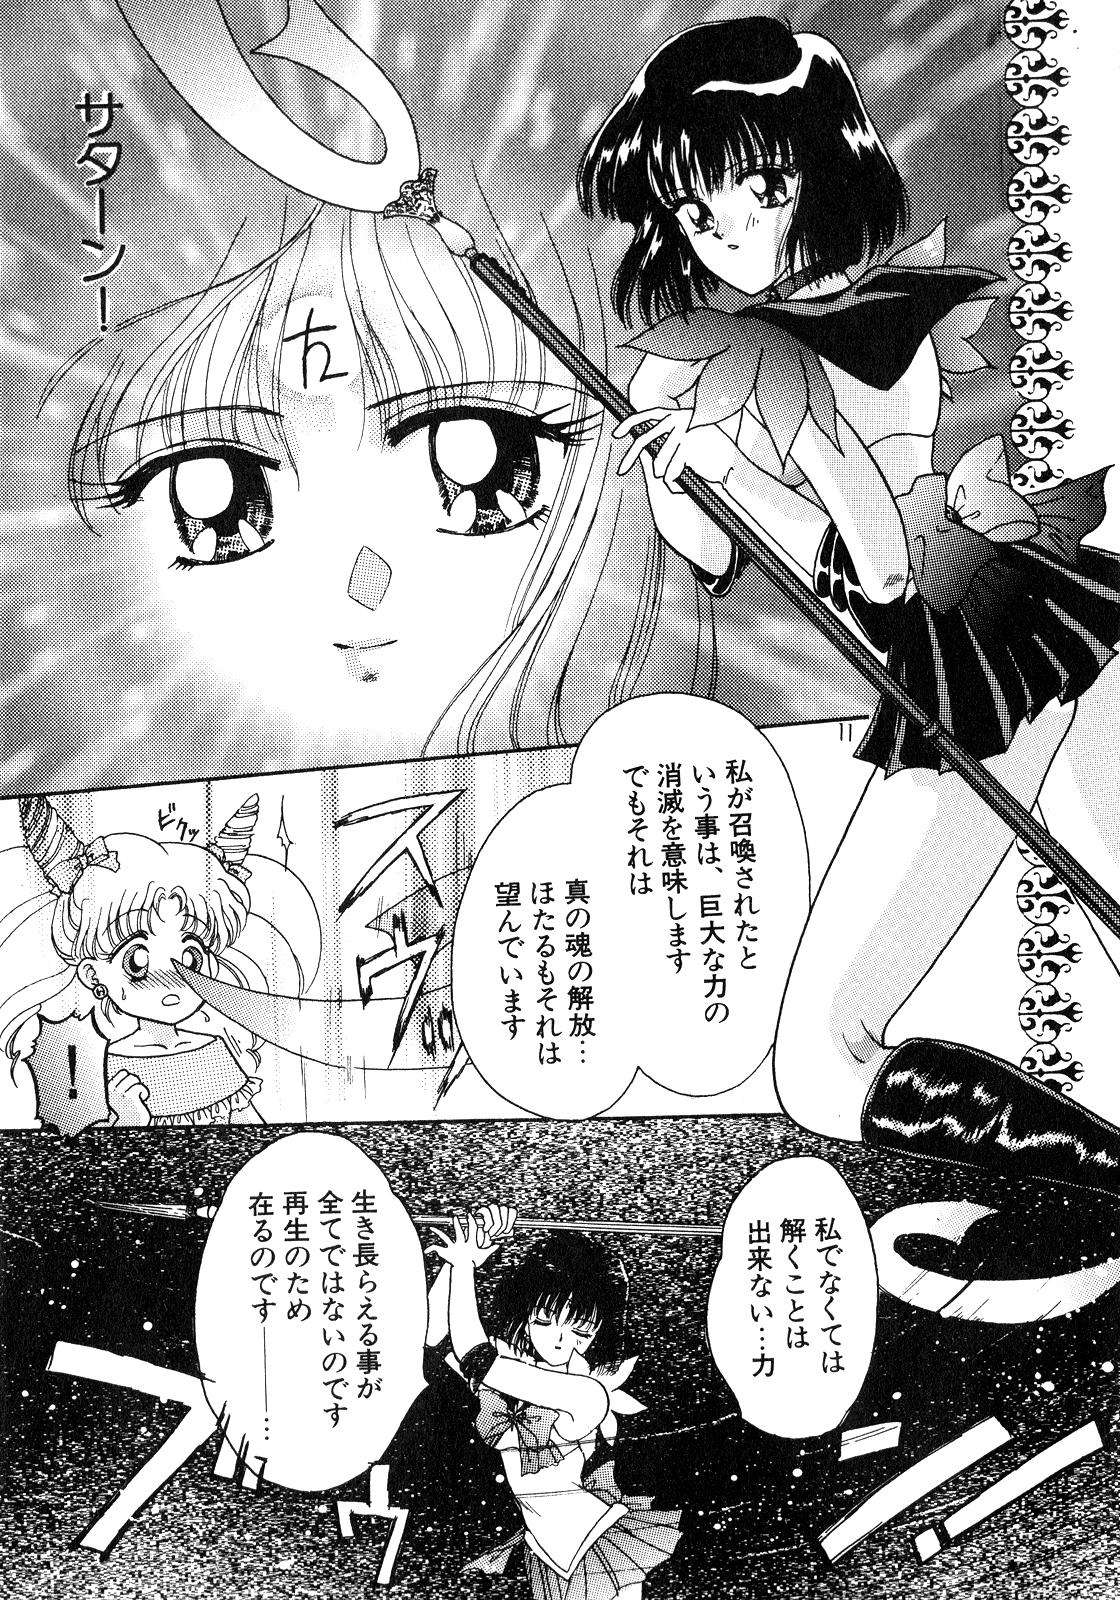 Jock Lunatic Party 8 - Sailor moon Gay Youngmen - Page 10